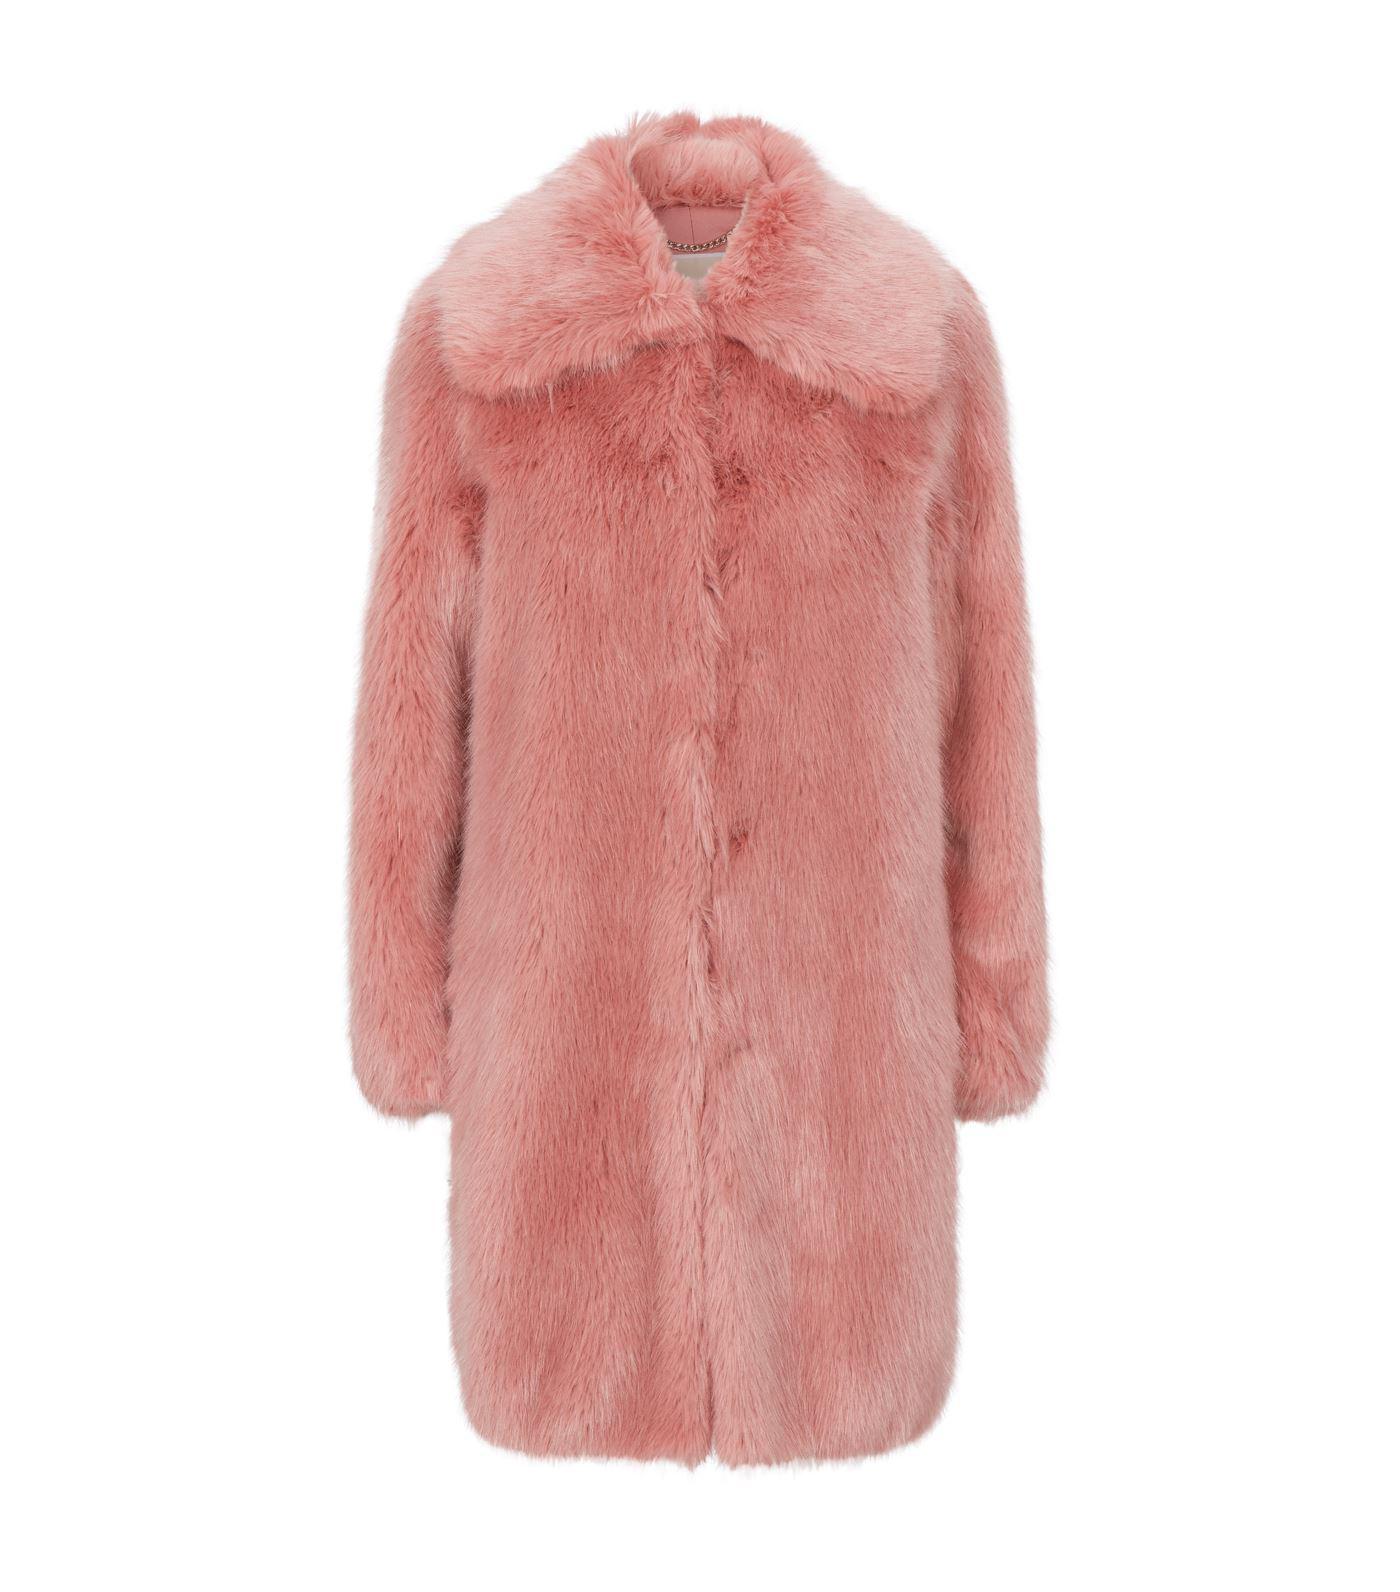 MICHAEL Michael Kors Faux Fur Coat in Pink - Lyst